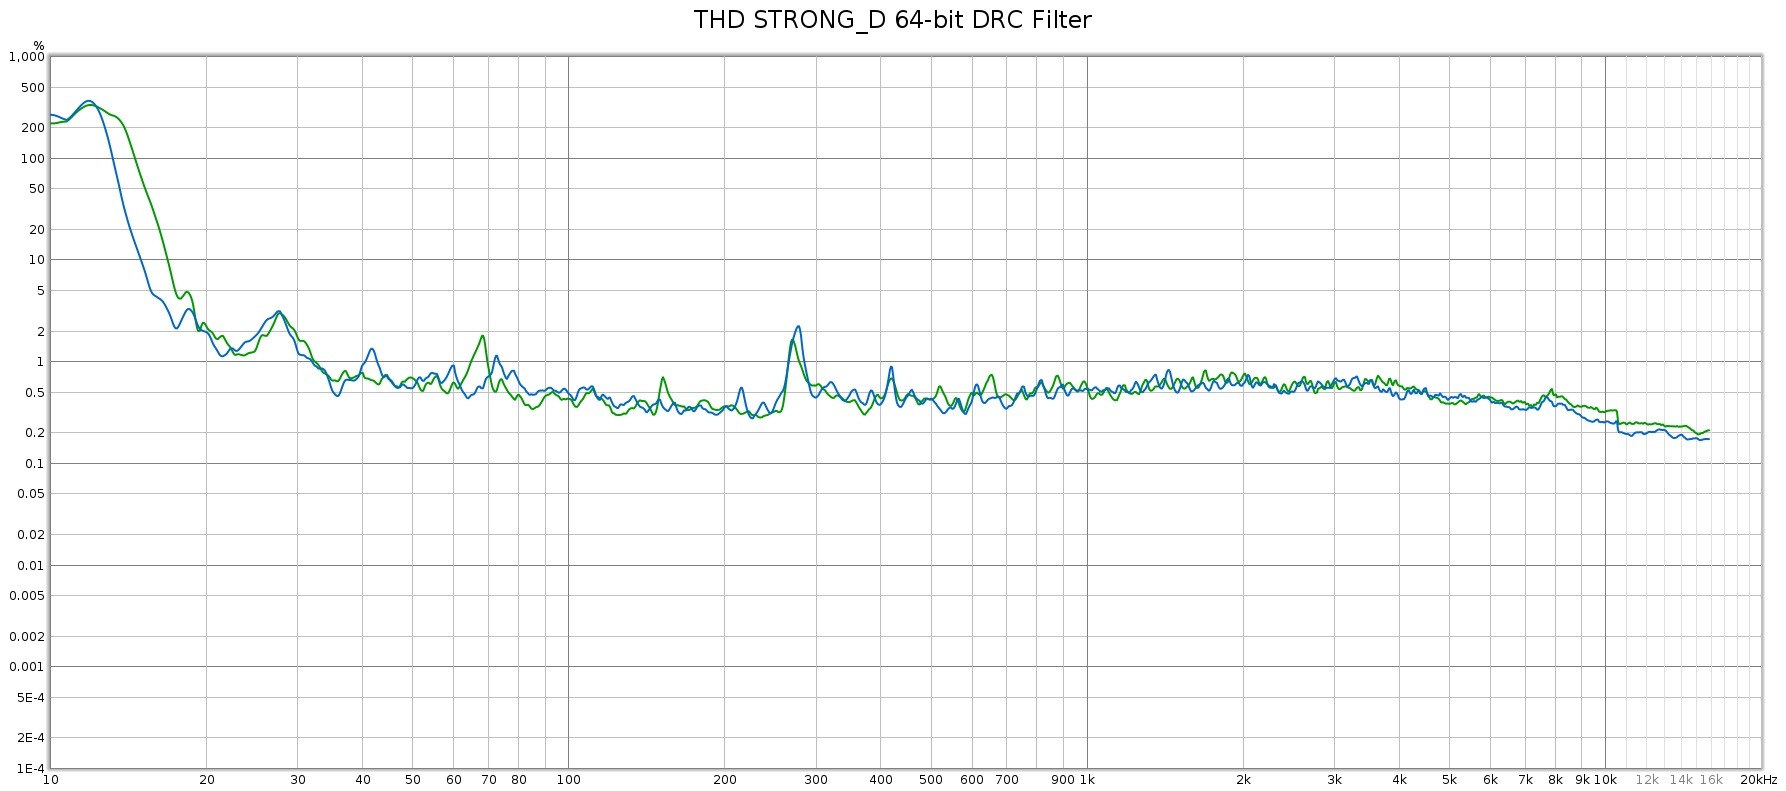 STRONG_D_DRC_64bit_THD.jpg